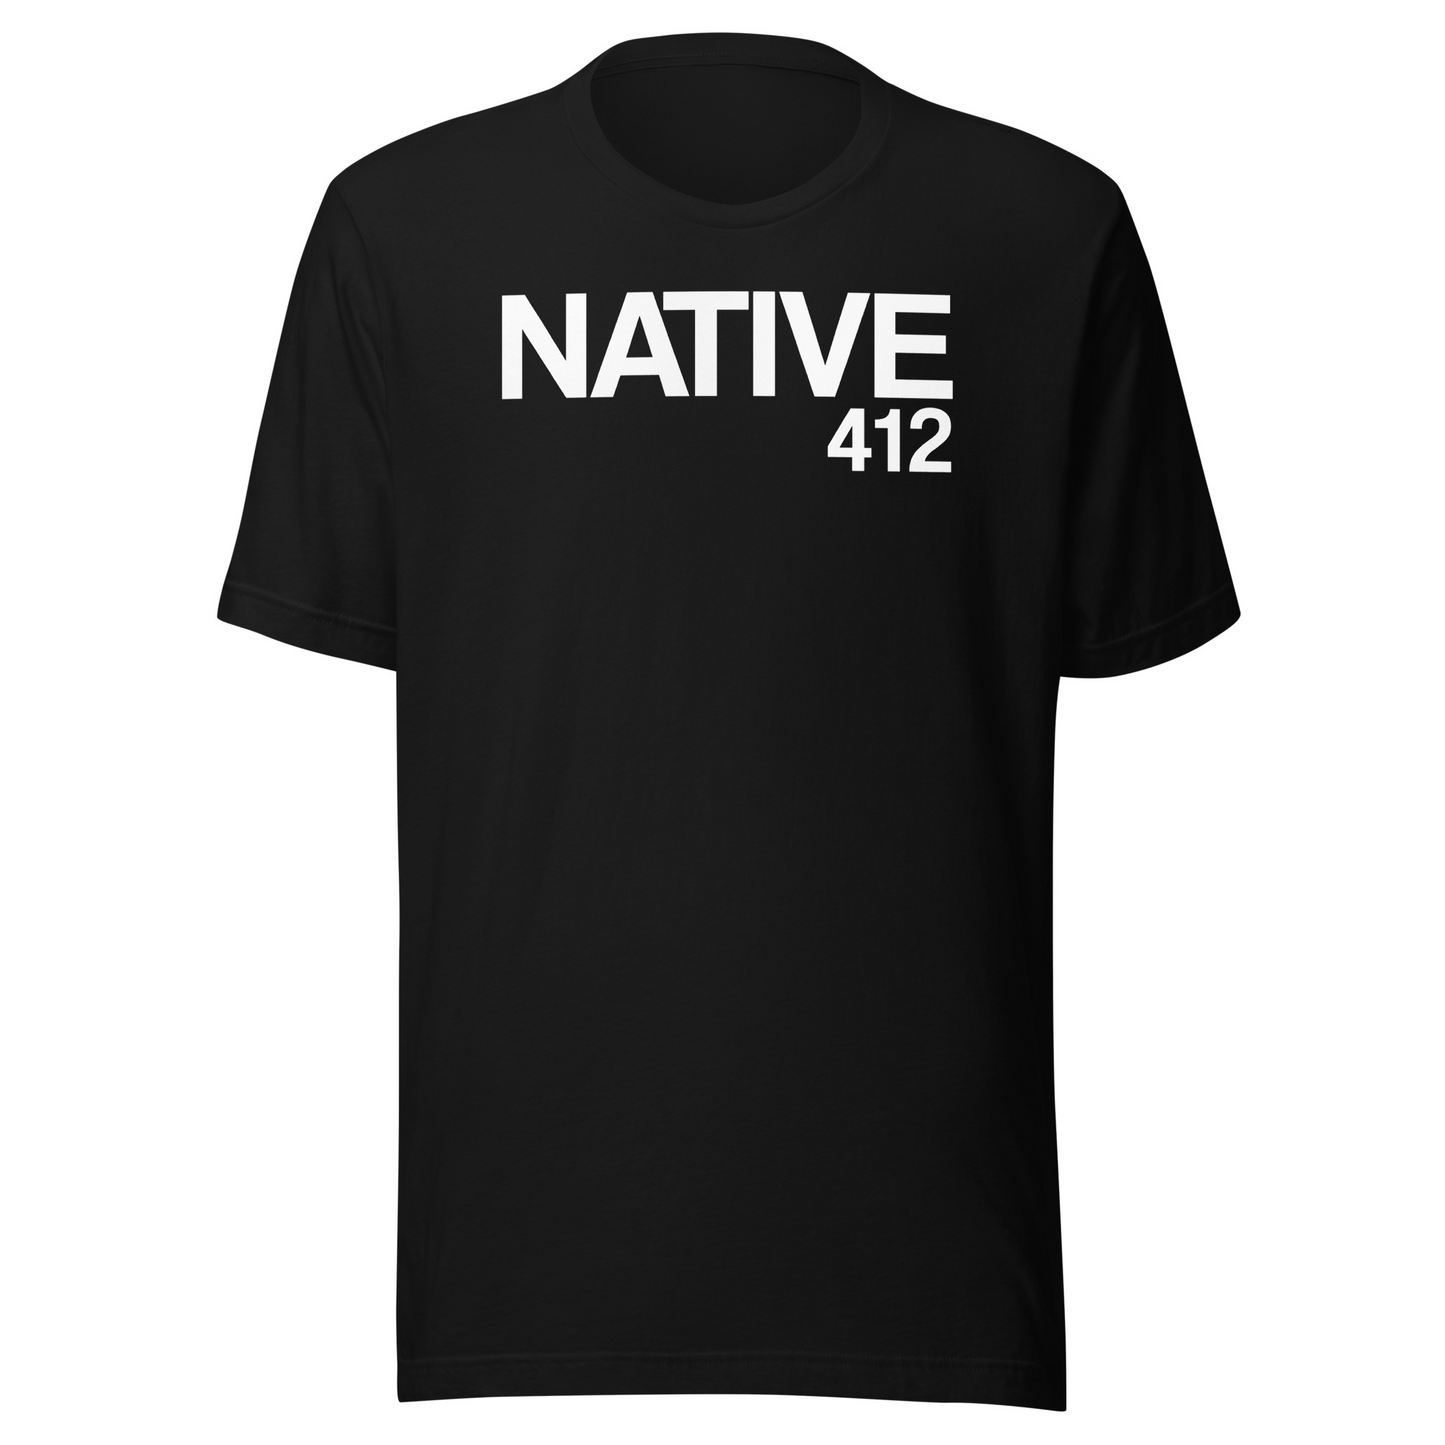 NATIVE 412 Classic Black & White T-Shirt